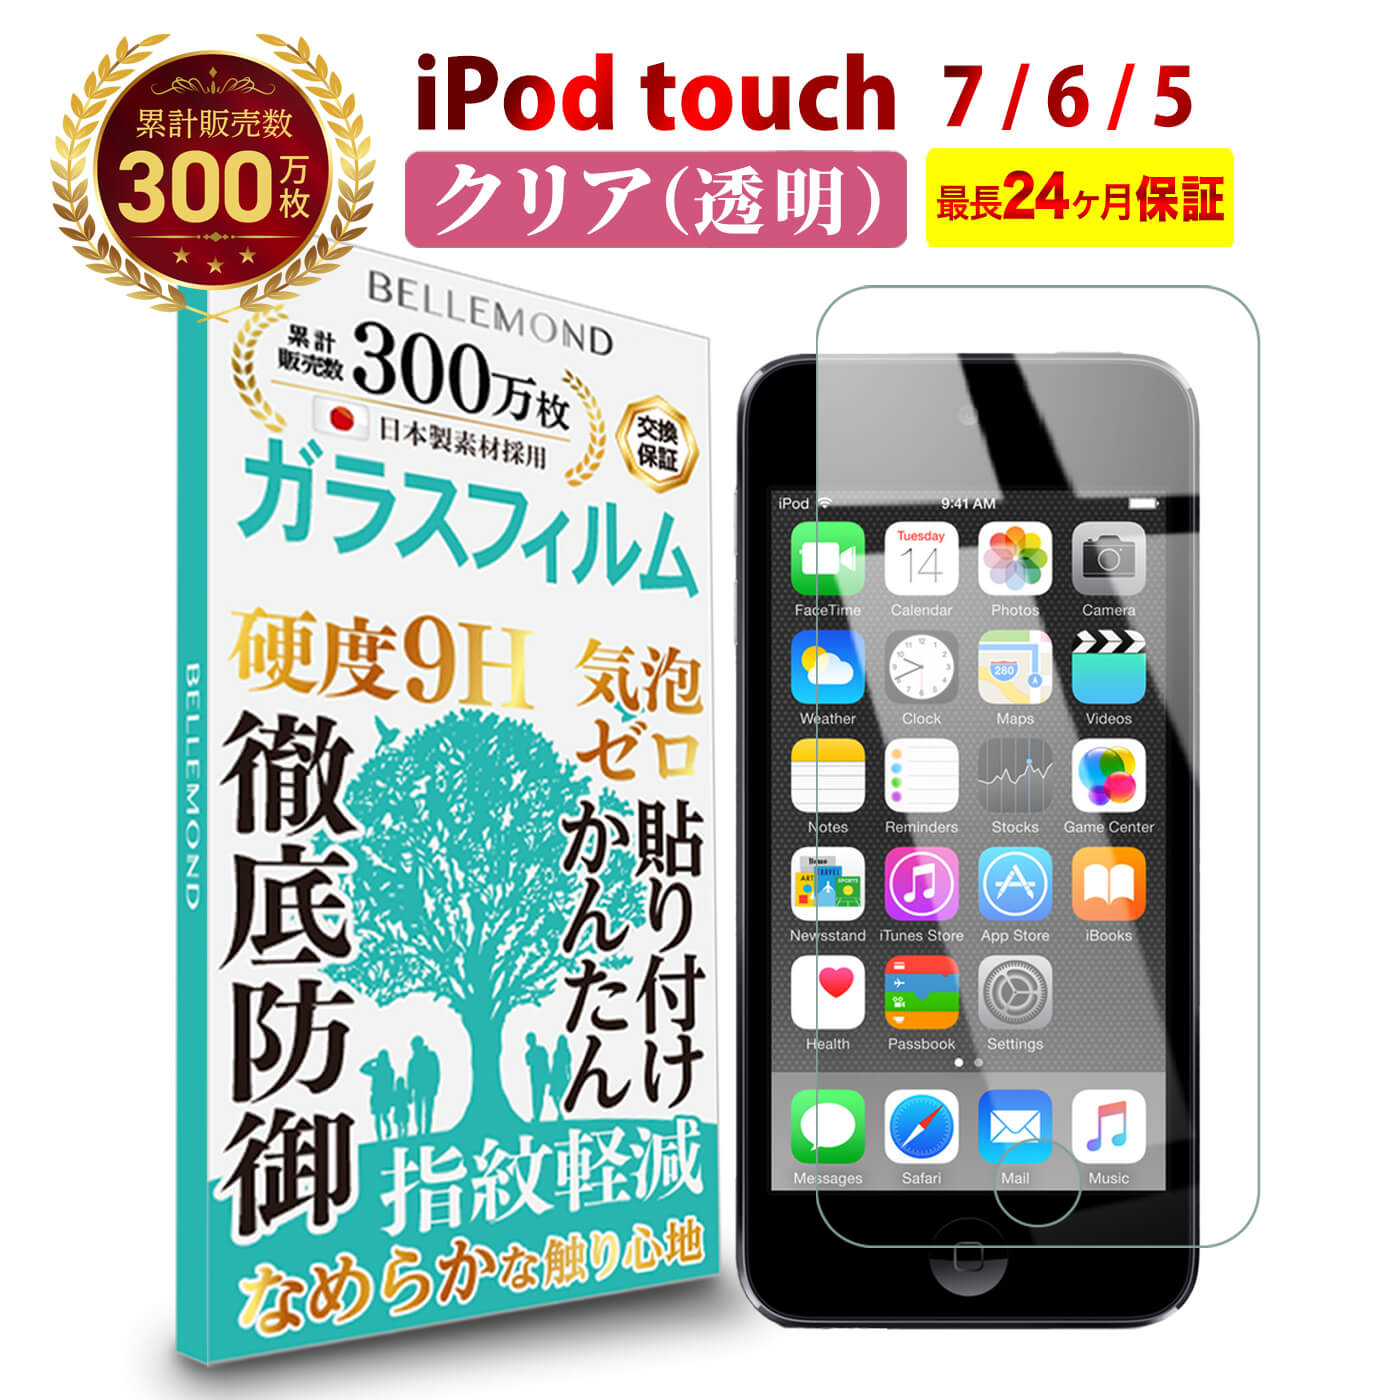 【長期無料保証付き】 iPod touch 5 / 6 